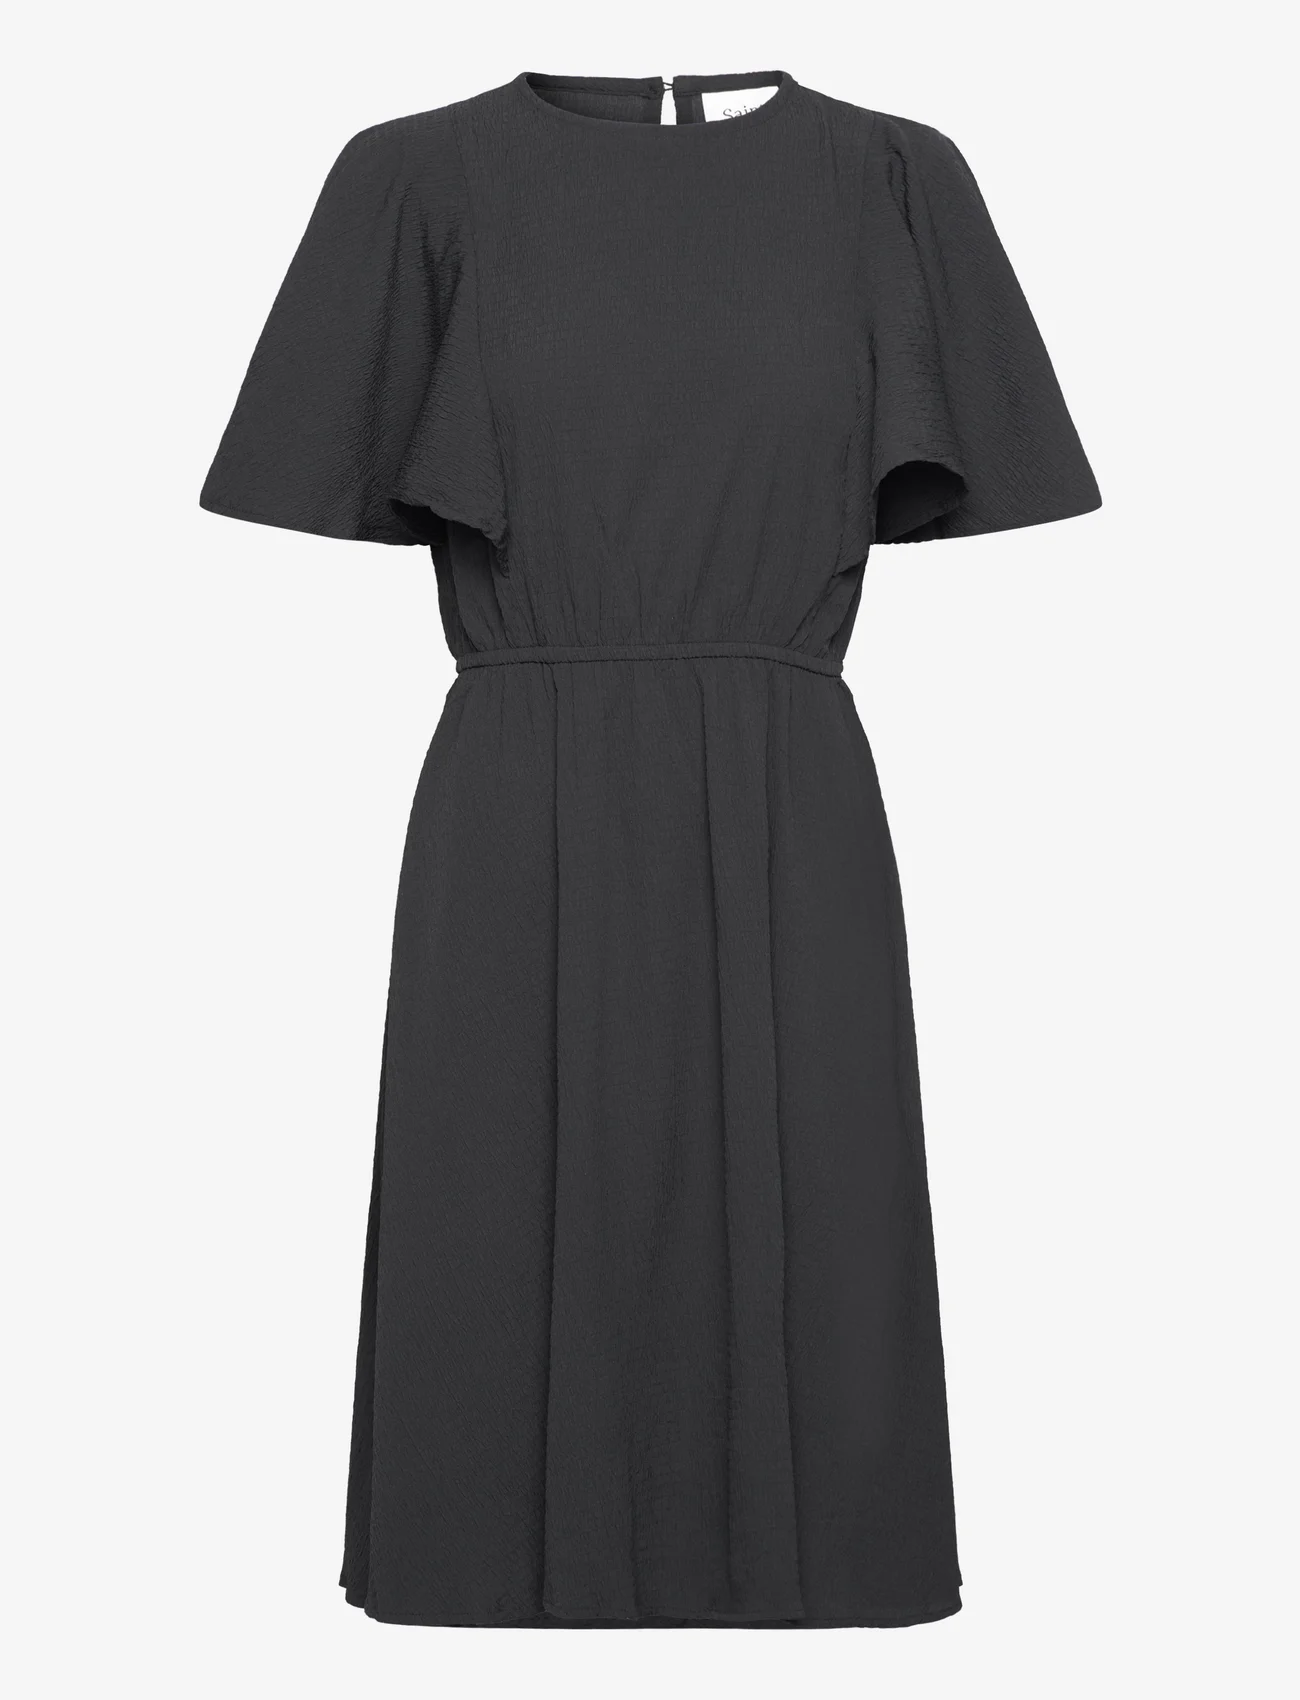 Saint Tropez - DrunaSZ Dress - midiklänningar - black - 0